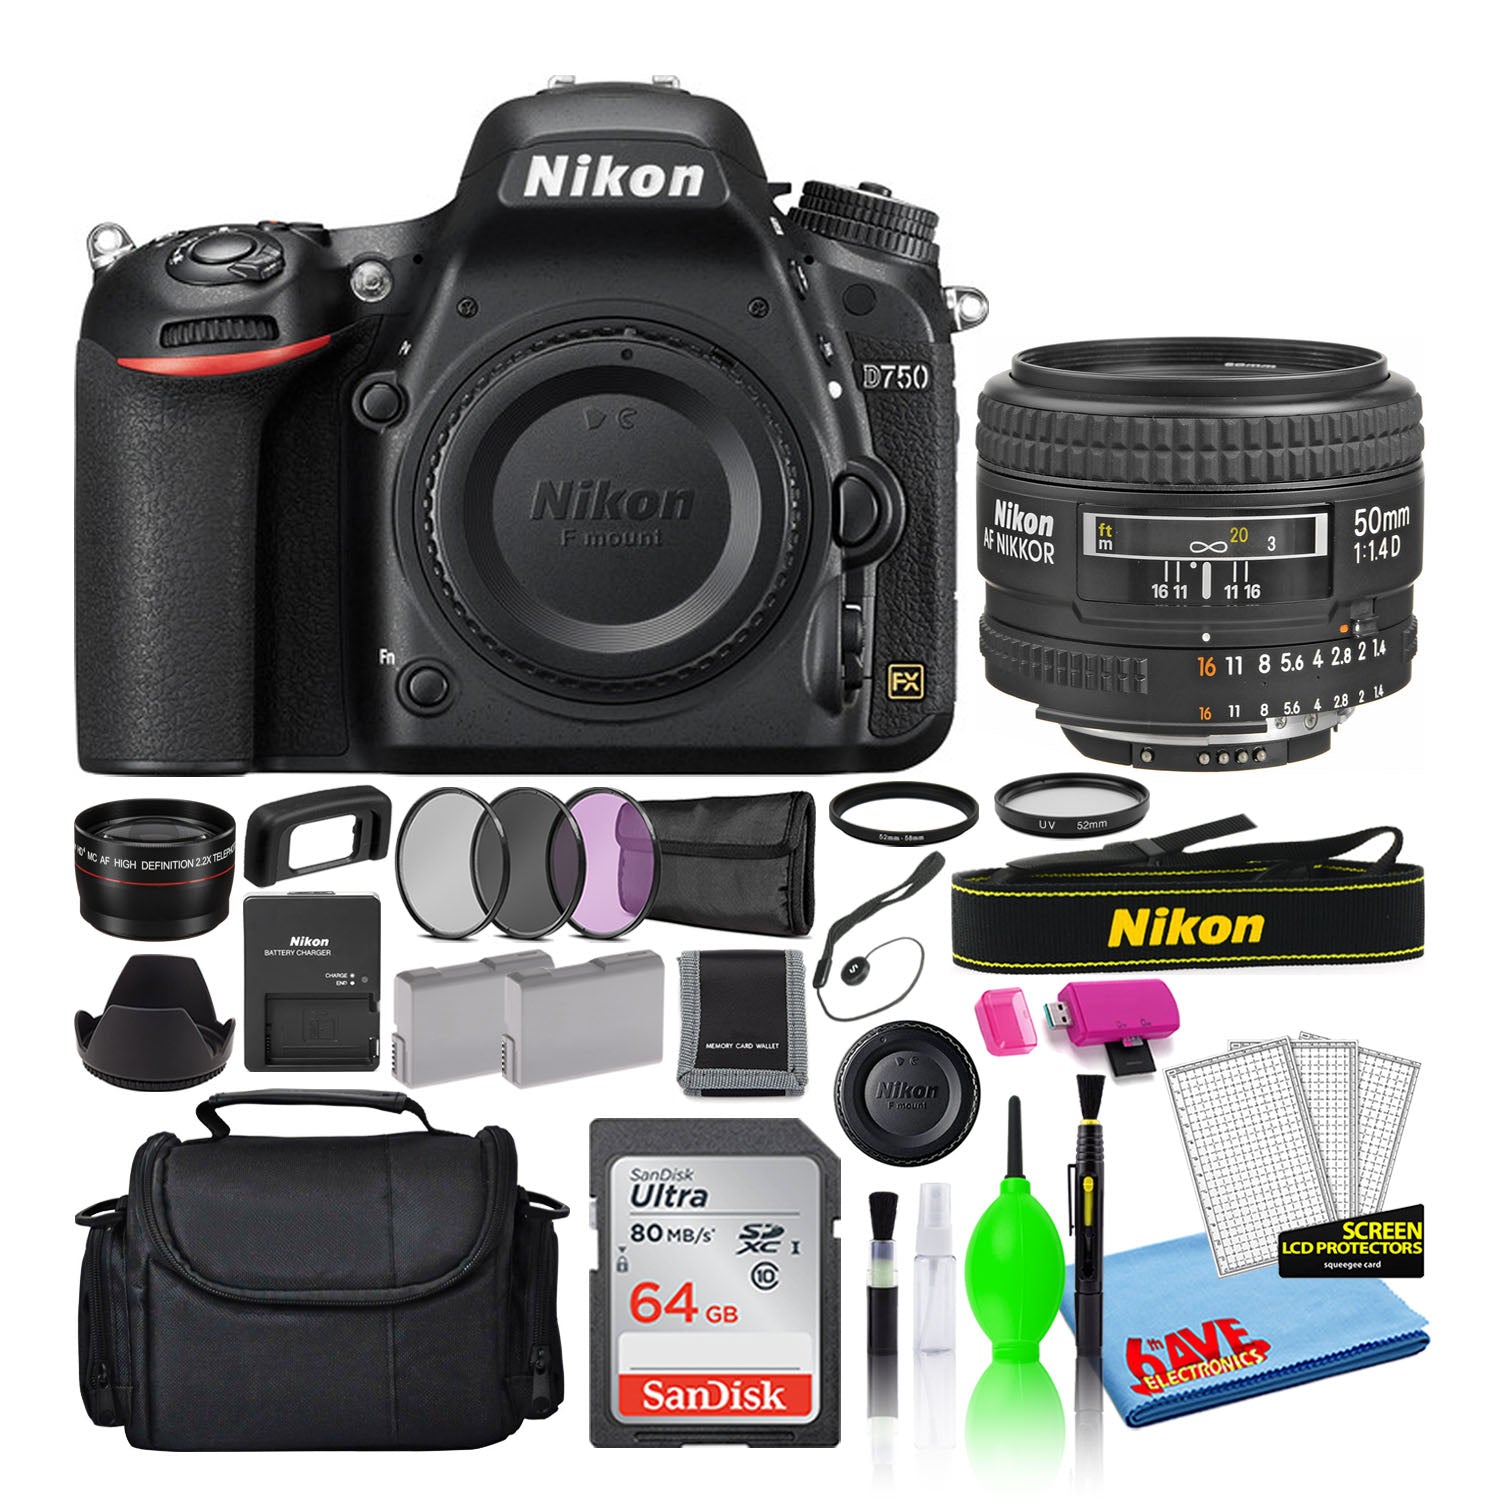 Nikon D750 Digital Camera with 50mm f/1.4D Lens (1543) + 64GB Card + Bag (Intl)